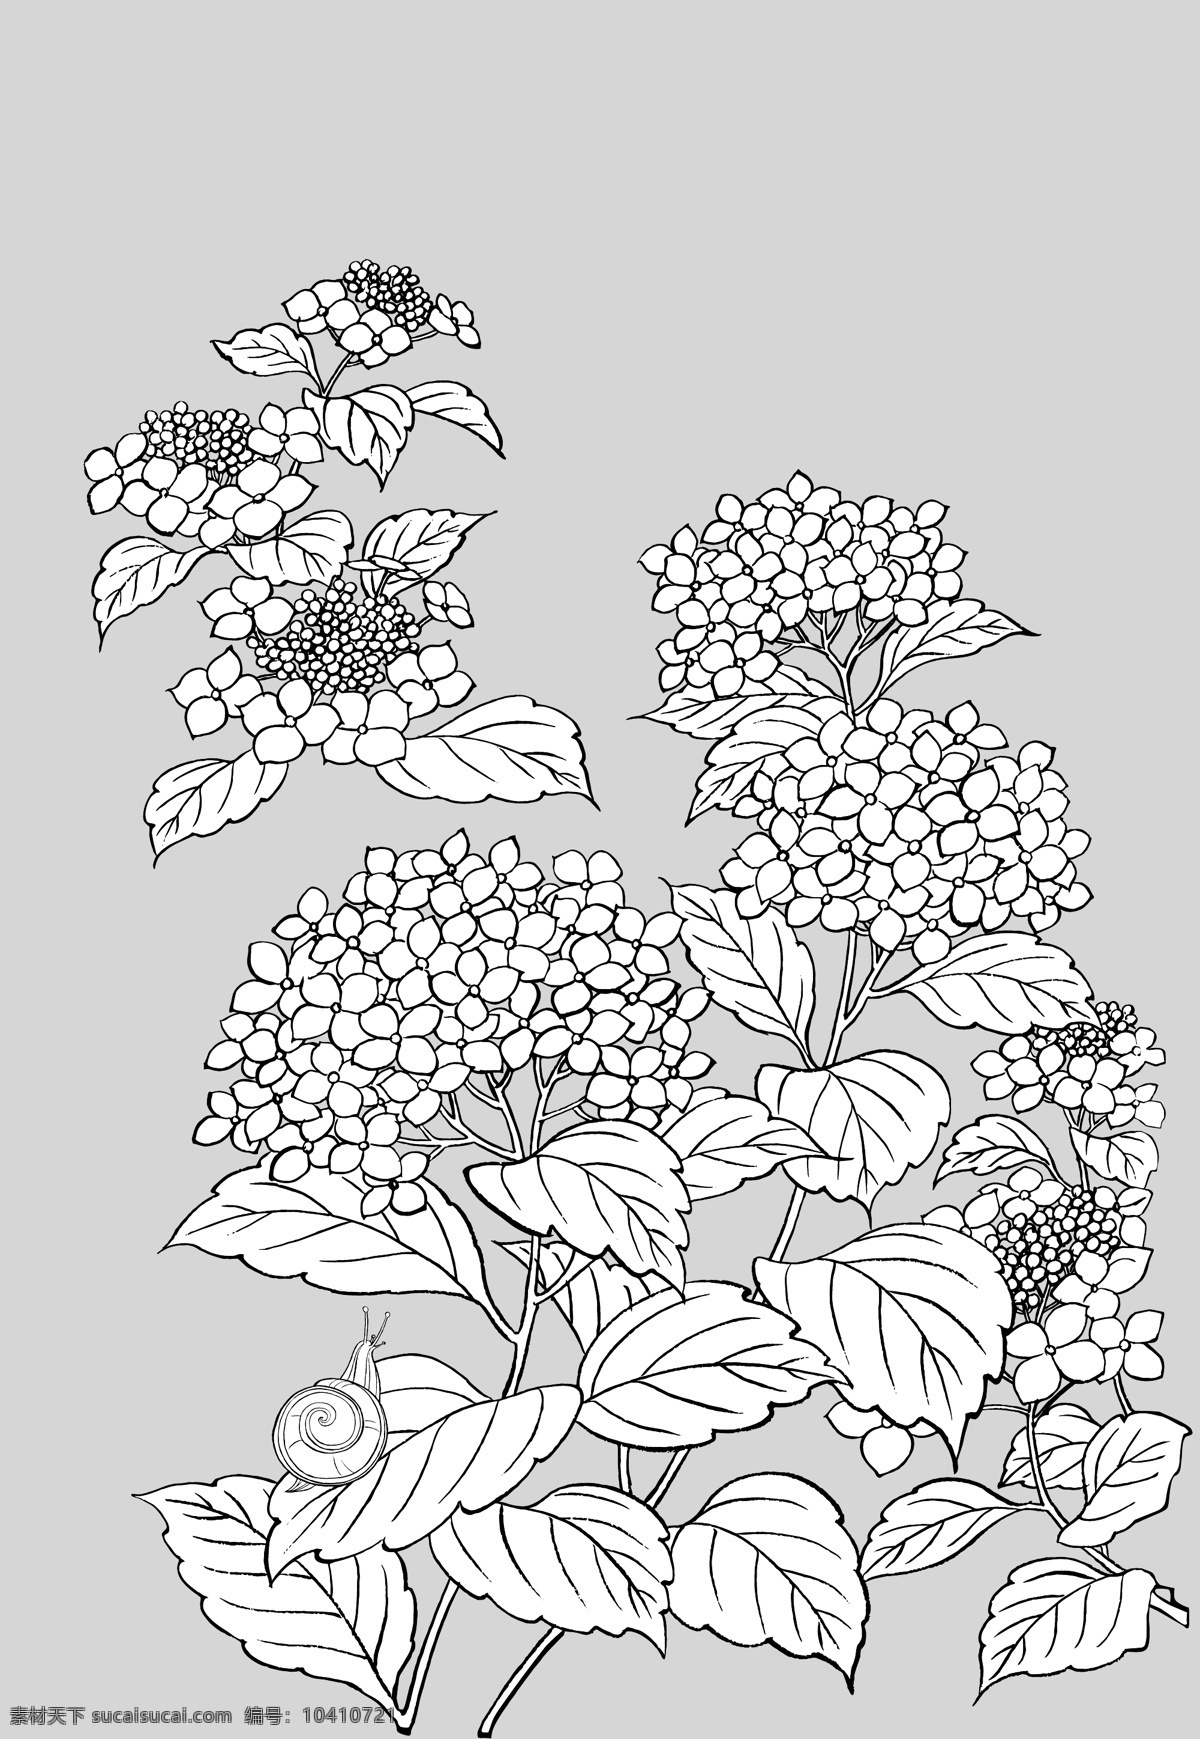 日本 线描 植物 花卉 矢量 紫阳花 蜗牛 勾线 花朵 枝叶 花型 矢量元素 卡通设计